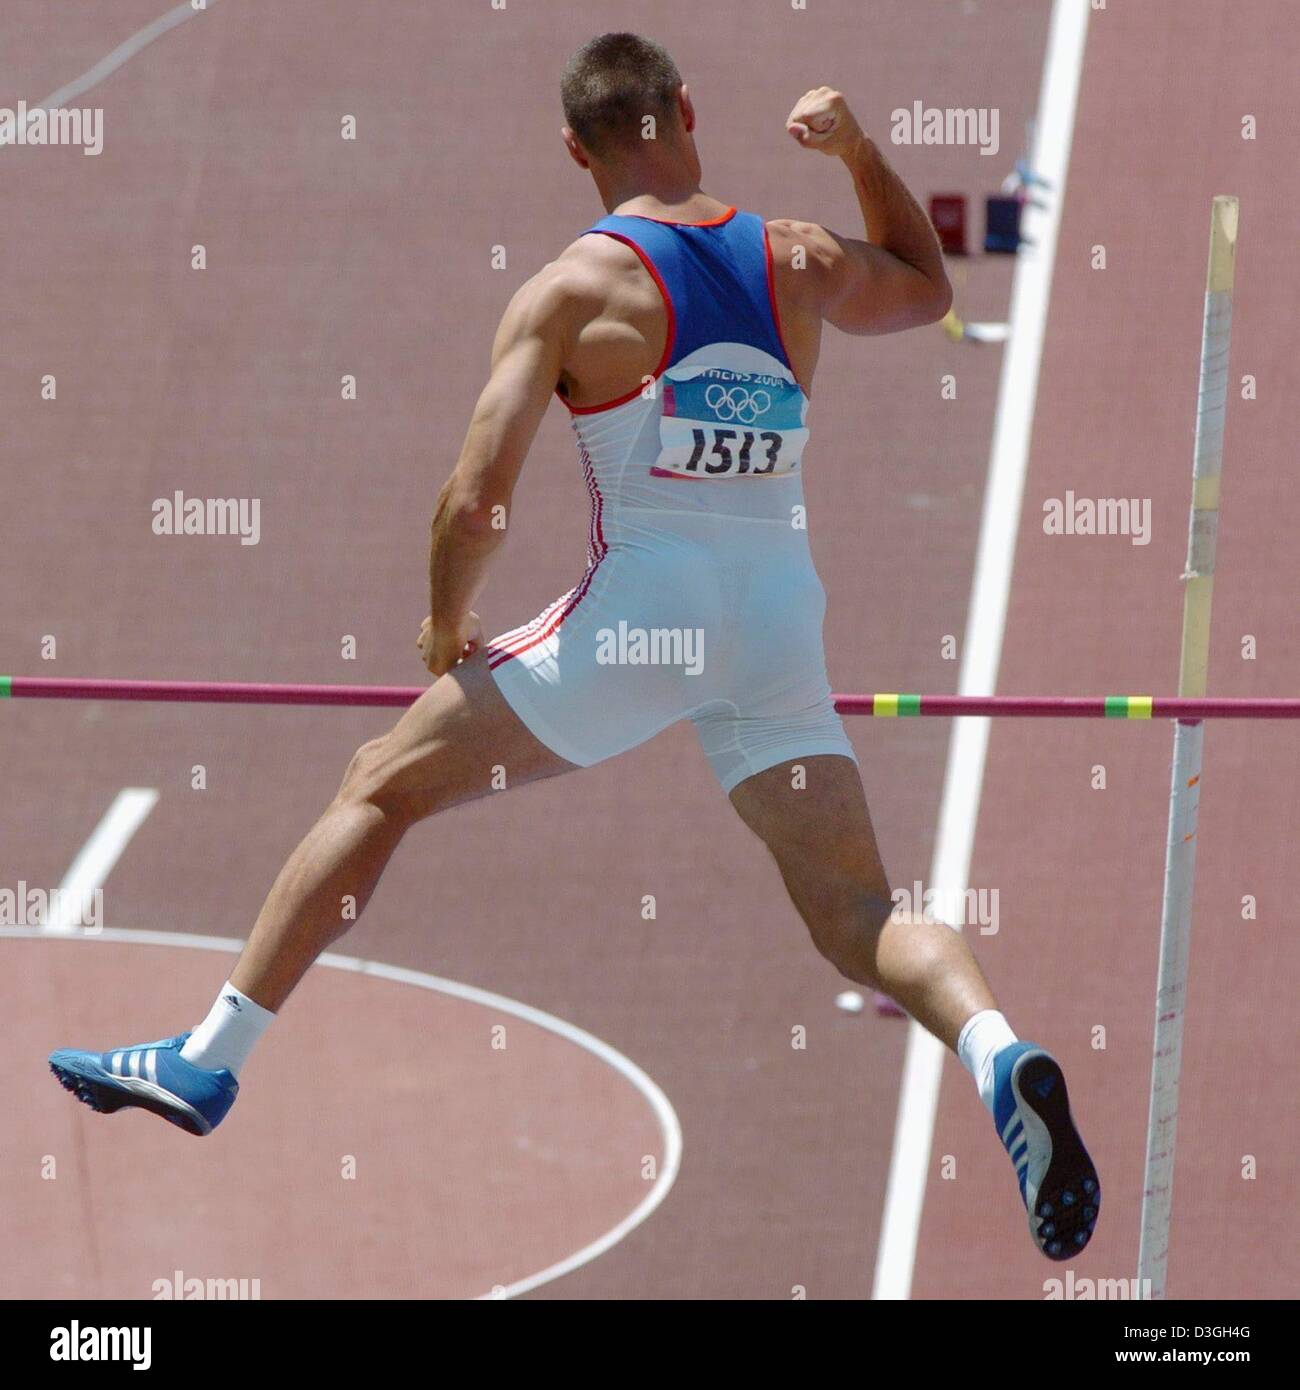 czech decathlon world record holder